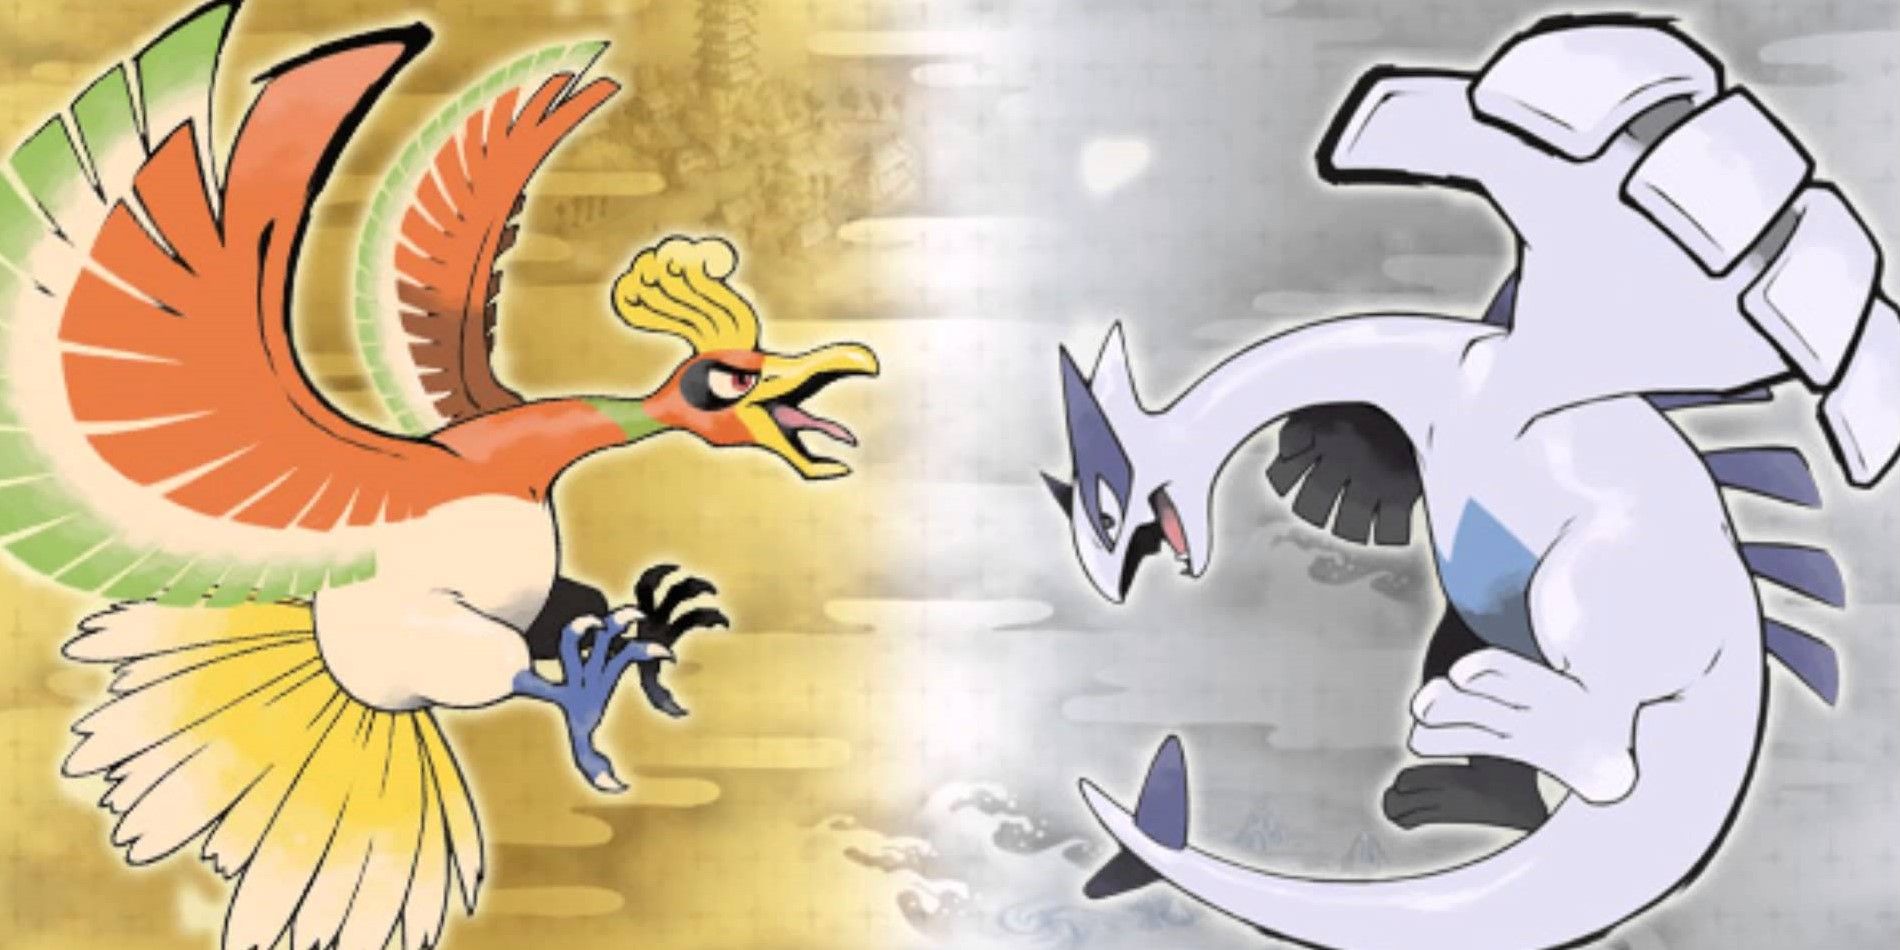 Pokémon Heart Gold ou Soul Silver ? - Blog de viper9 - Nintendo-Master